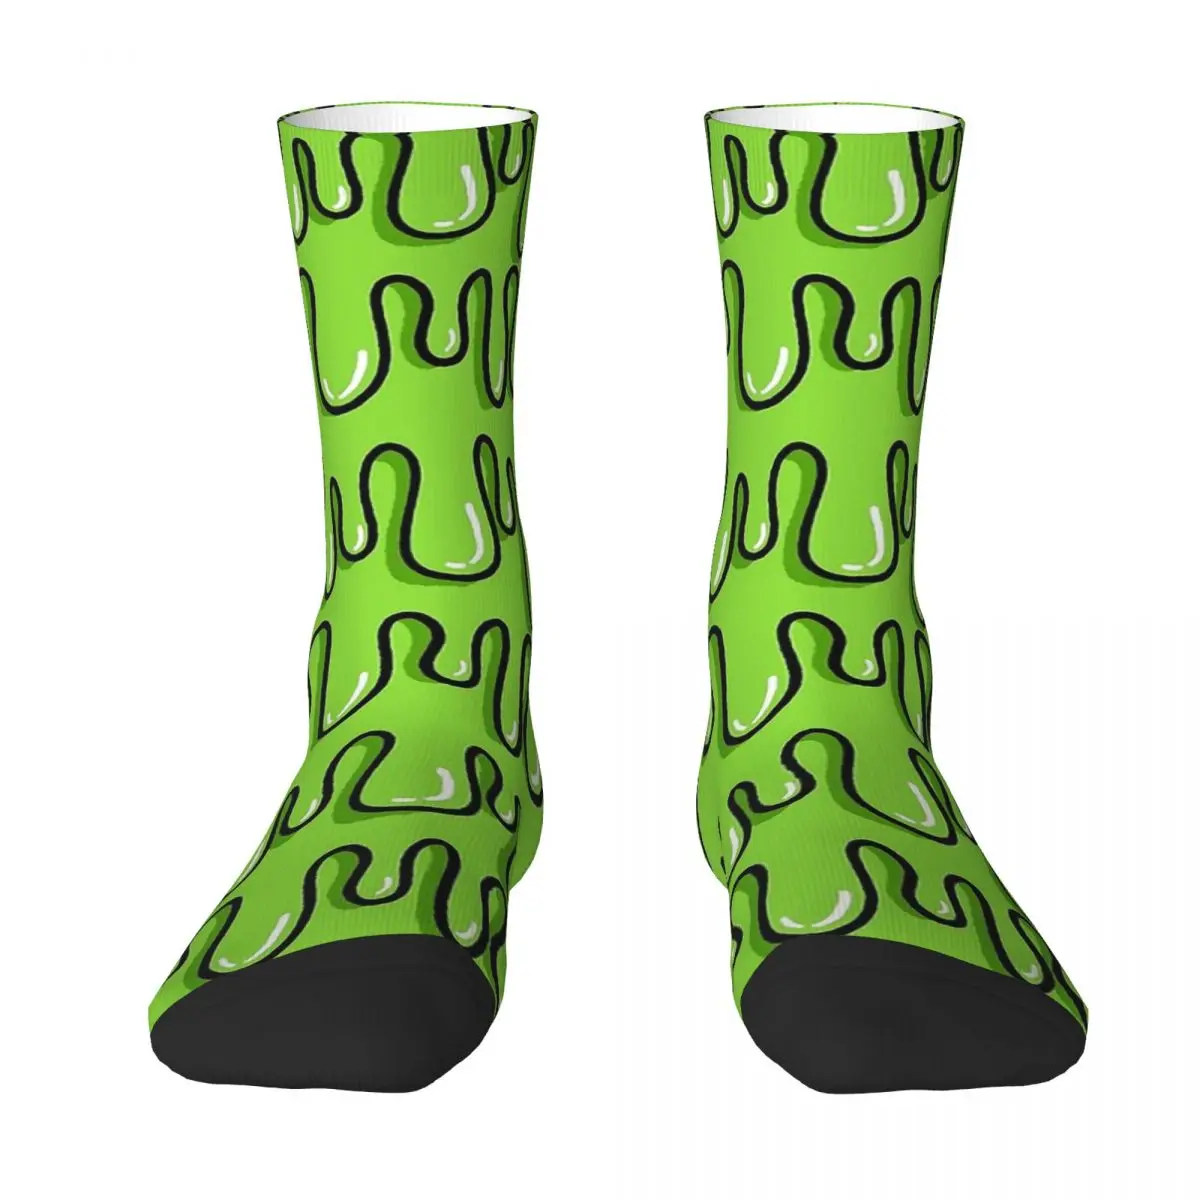 

Зеленые Носки Drippy Frankenstein унисекс Зимние носки в стиле хип-хоп счастливые носки уличный стиль сумасшедшие носки